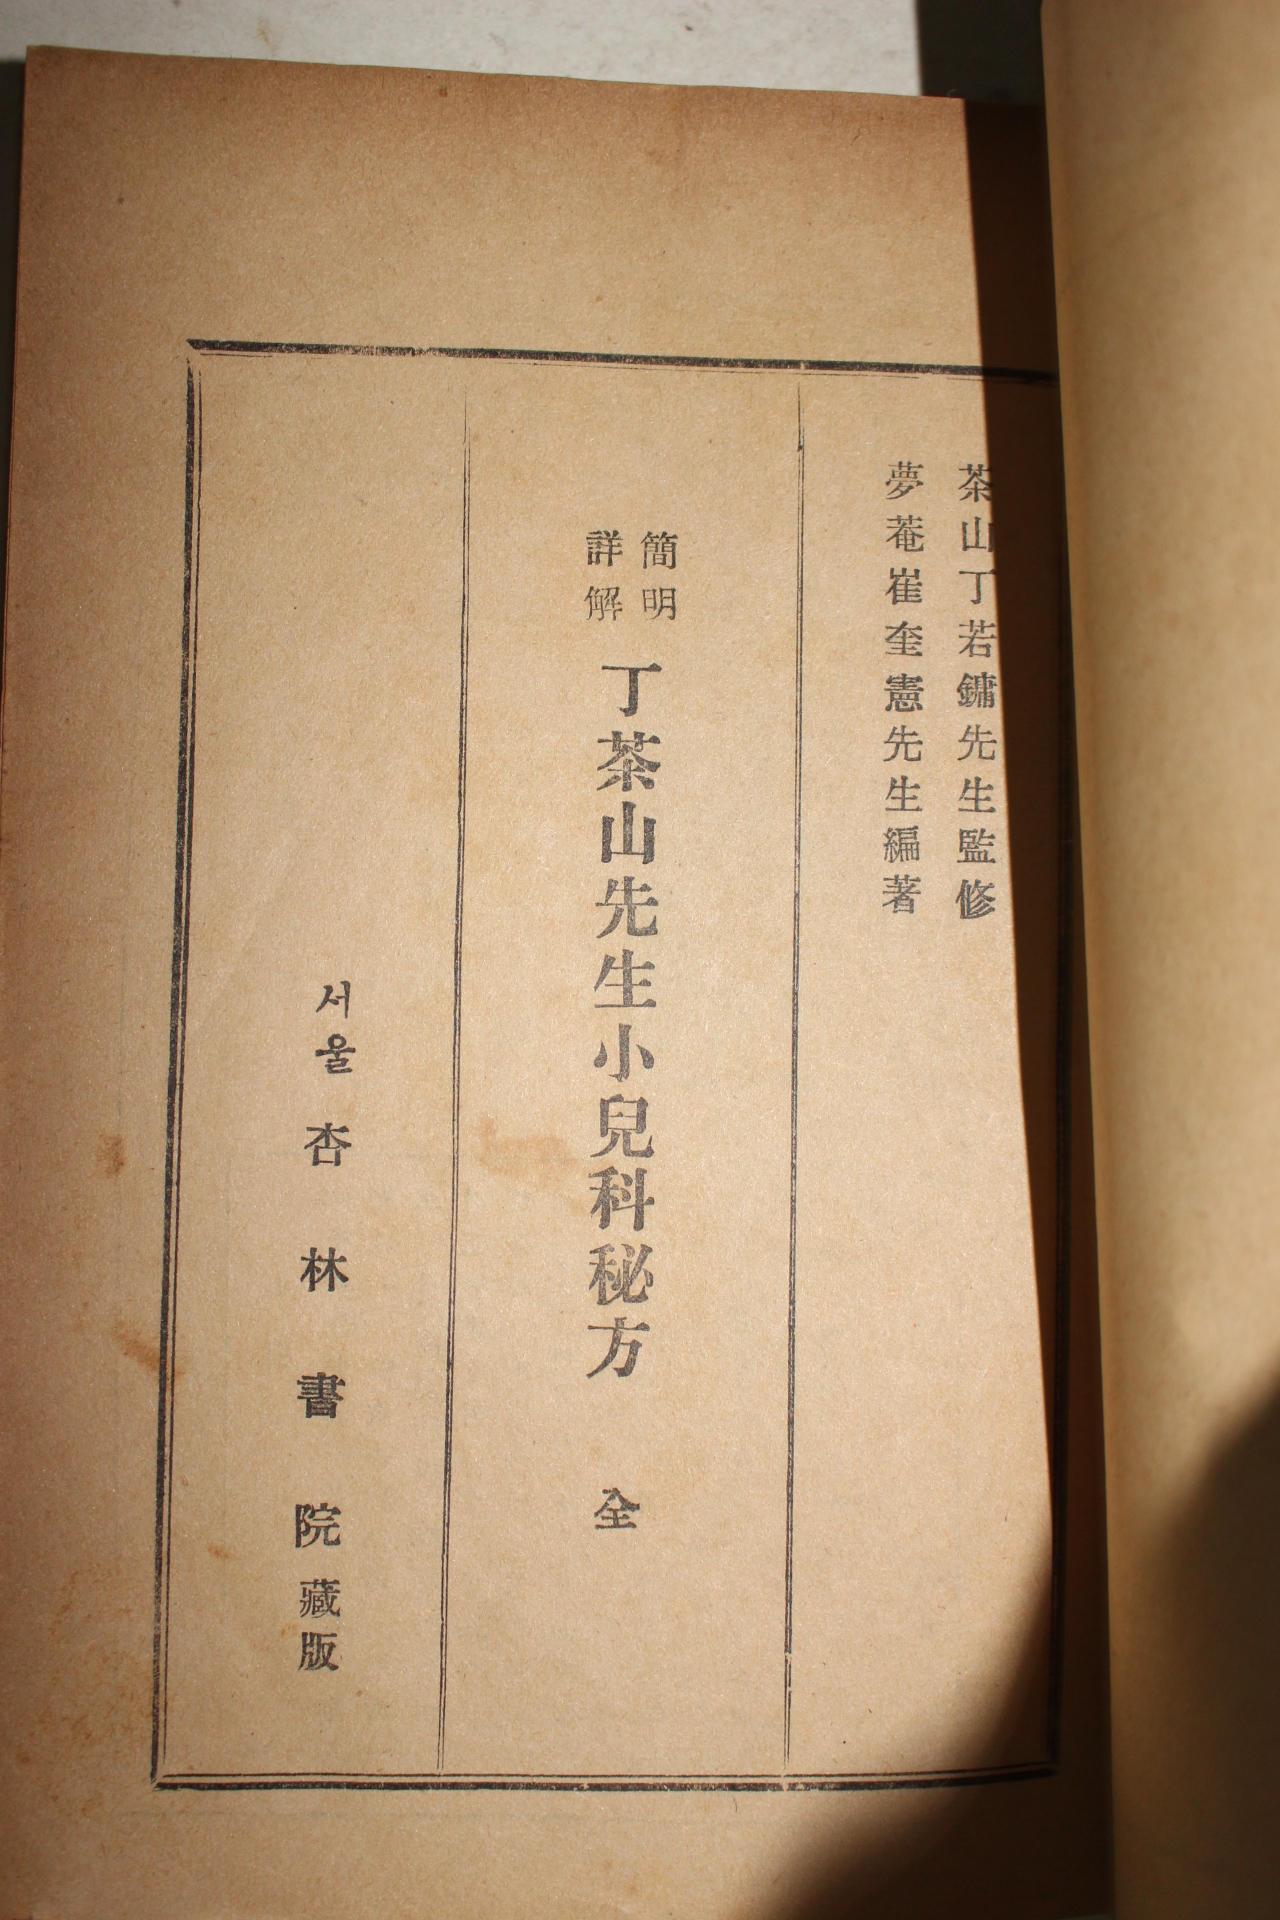 1954년 행림서원 의서 간명상해 정다산선생소아비방(丁茶山先生小兒秘方) 1책완질